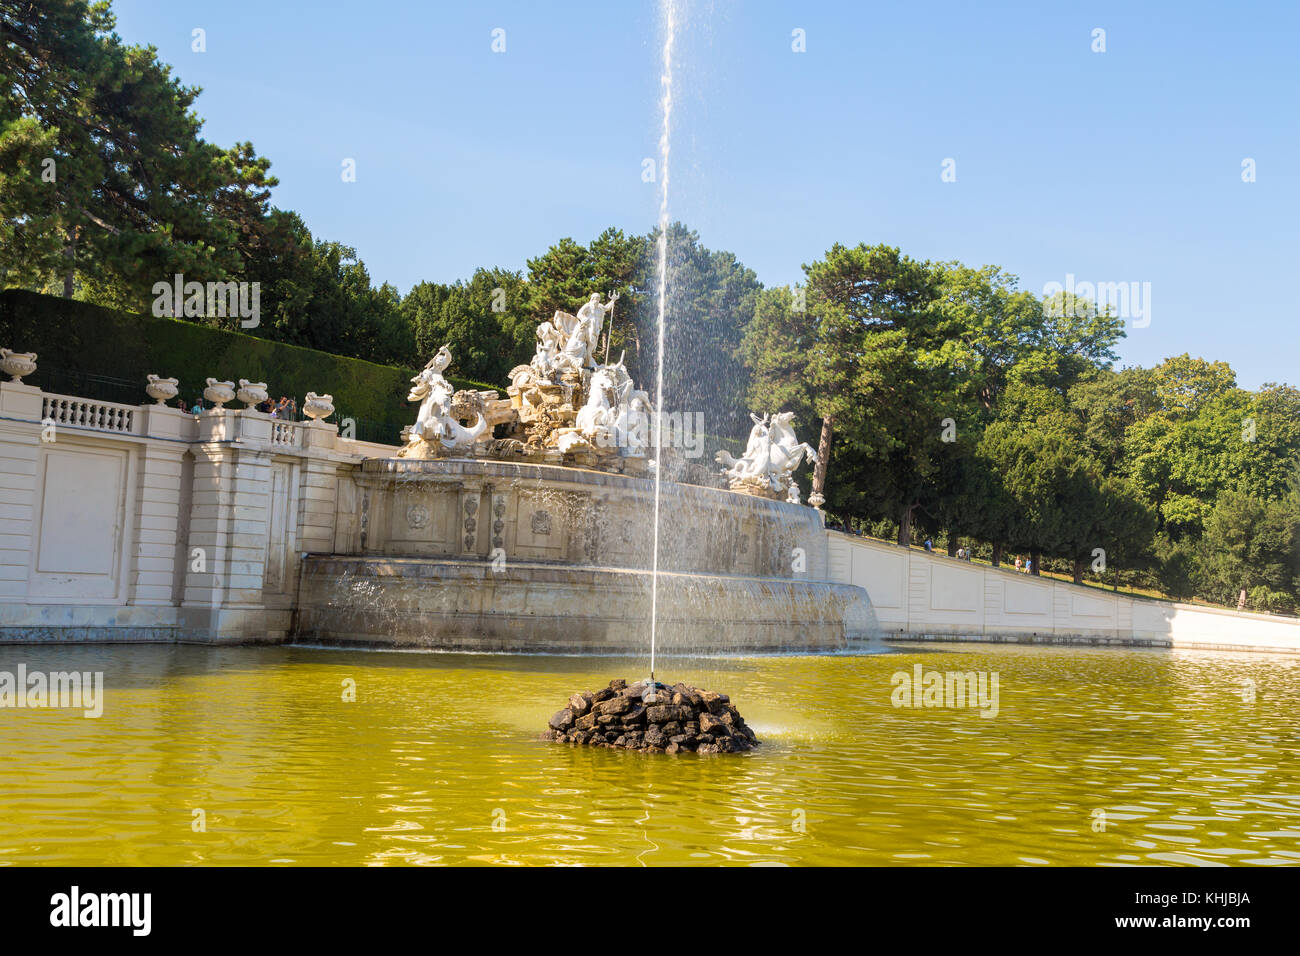 VIENNA, AUSTRIA - SEPTEMBER 11, 2016 : View of historical fountain in Schönbrunn Palace Garden in Vienna, on bright sky background. Stock Photo